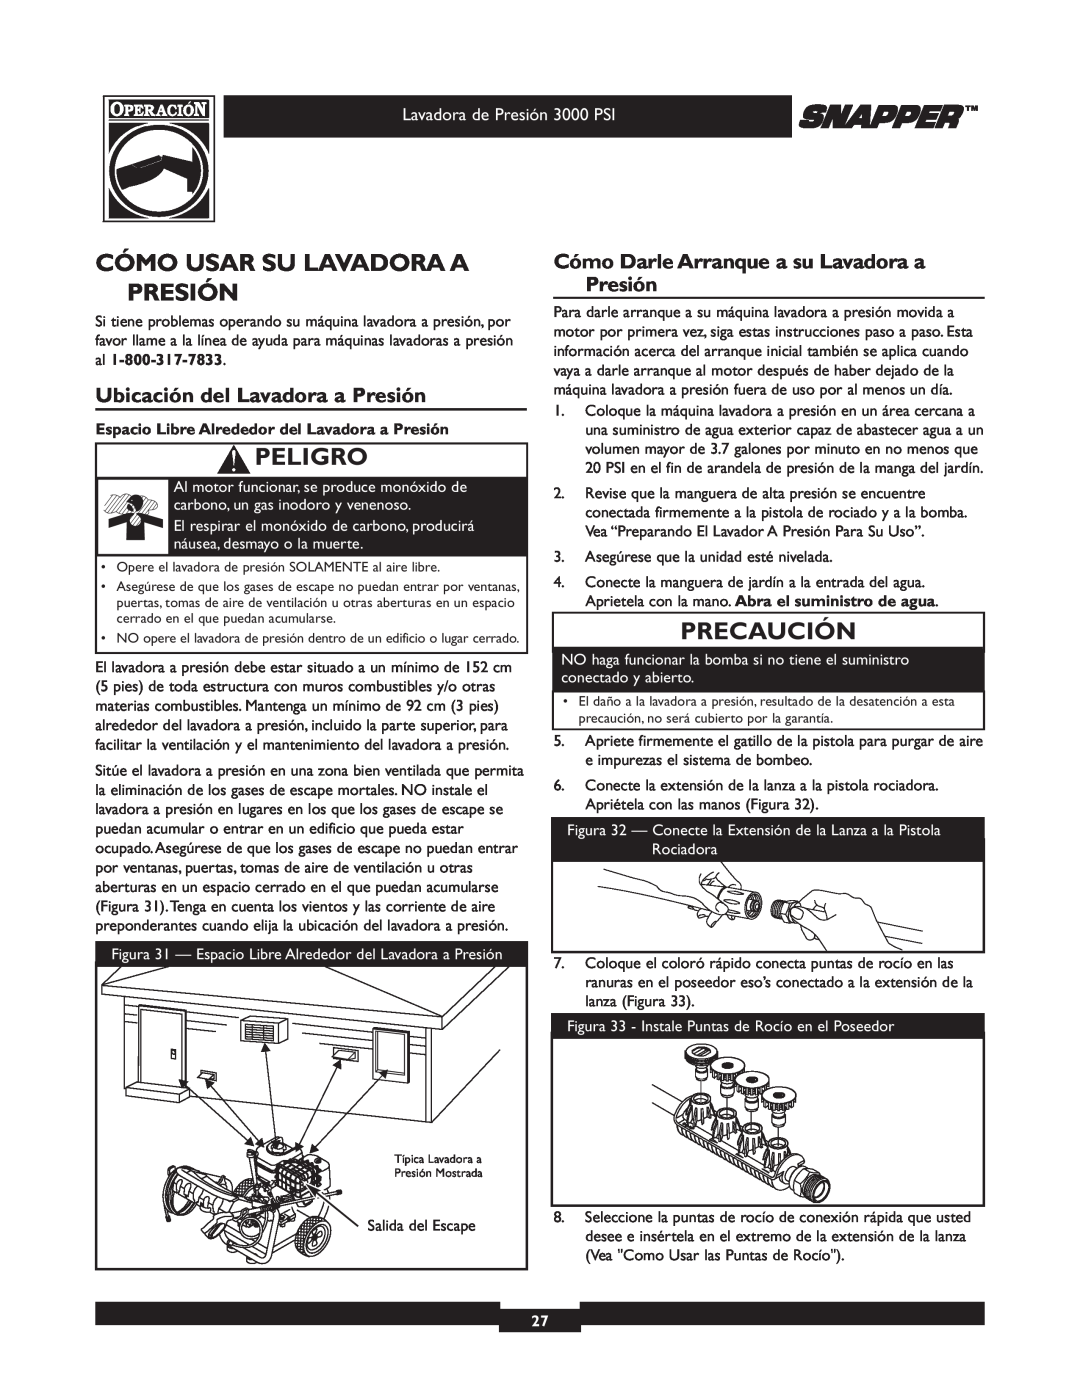 Snapper 020231 owner manual Cómo Usar Su Lavadora A Presión, Peligro, Ubicación del Lavadora a Presión, Precaución 